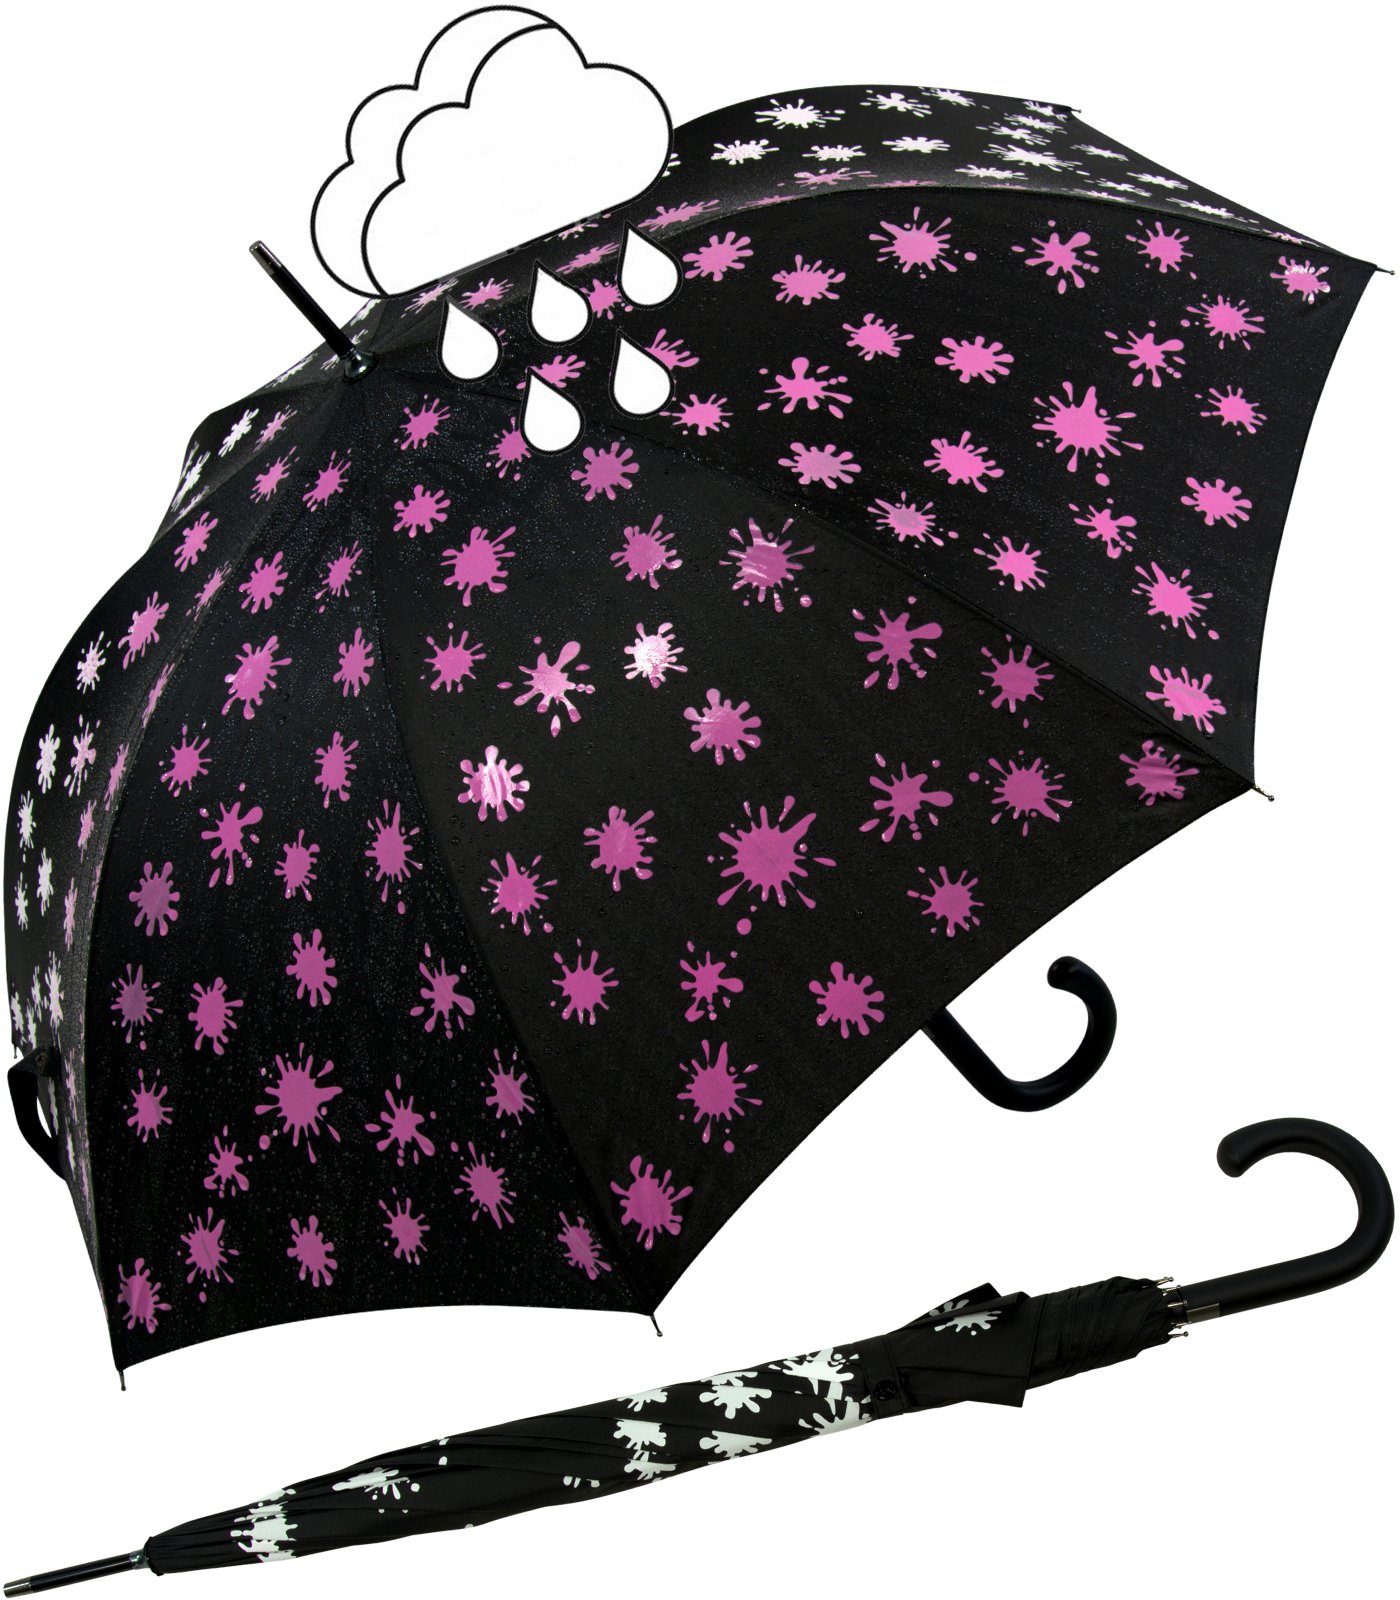 iX-brella Langregenschirm iX-brella Damenschirm mit Automatik und Wet Print, Farbänderung bei Nässe - Farbkleckse neon-pink schwarz-weiß-neonpink